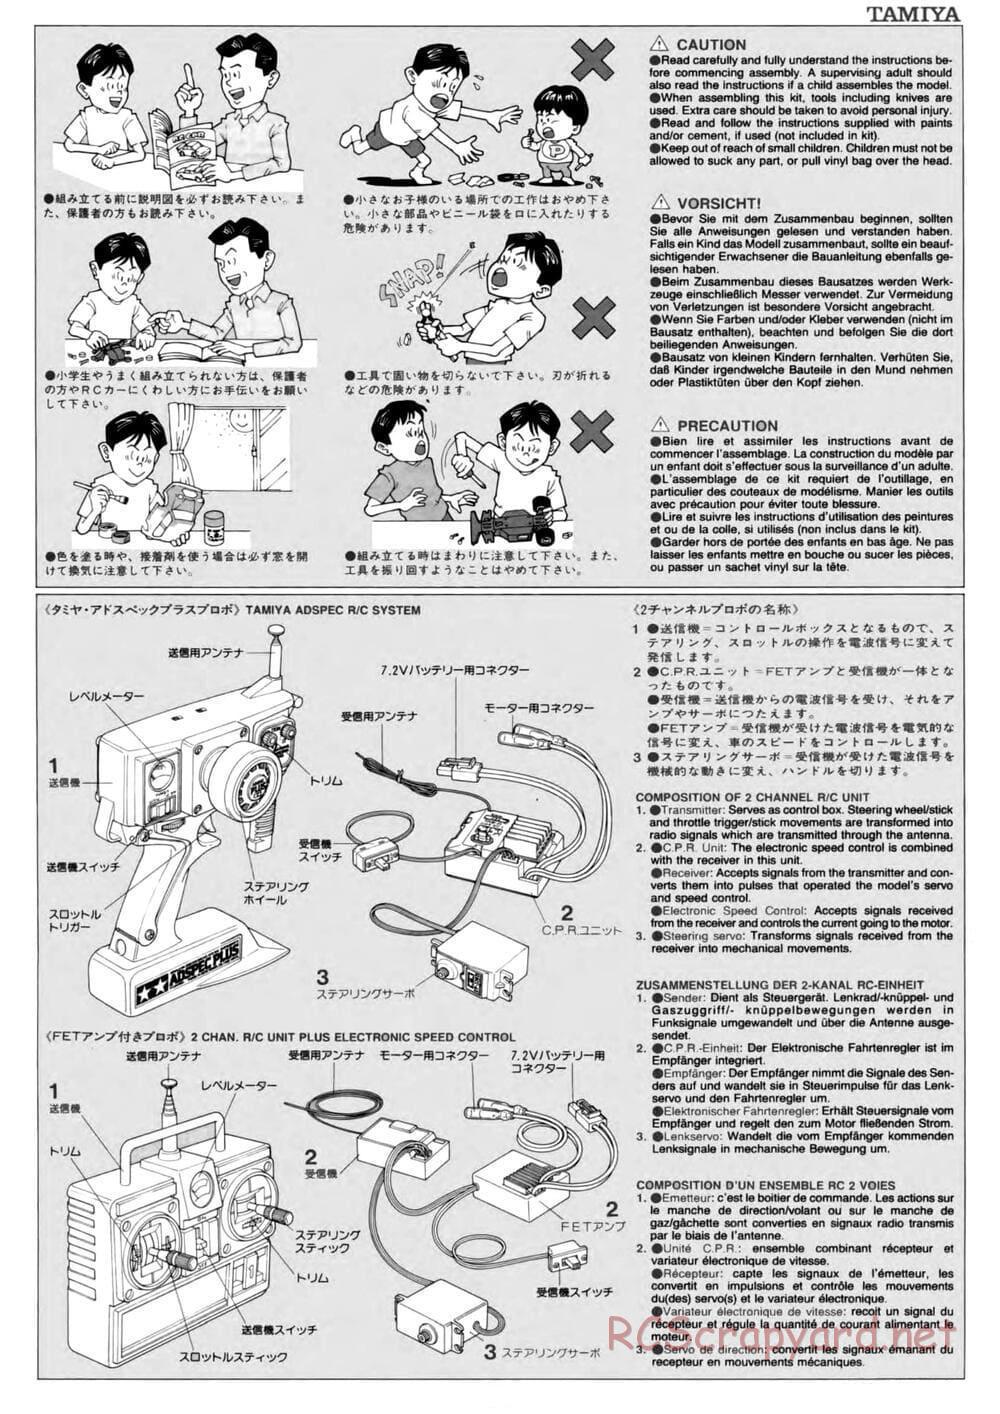 Tamiya - TL-01 Chassis - Manual - Page 3